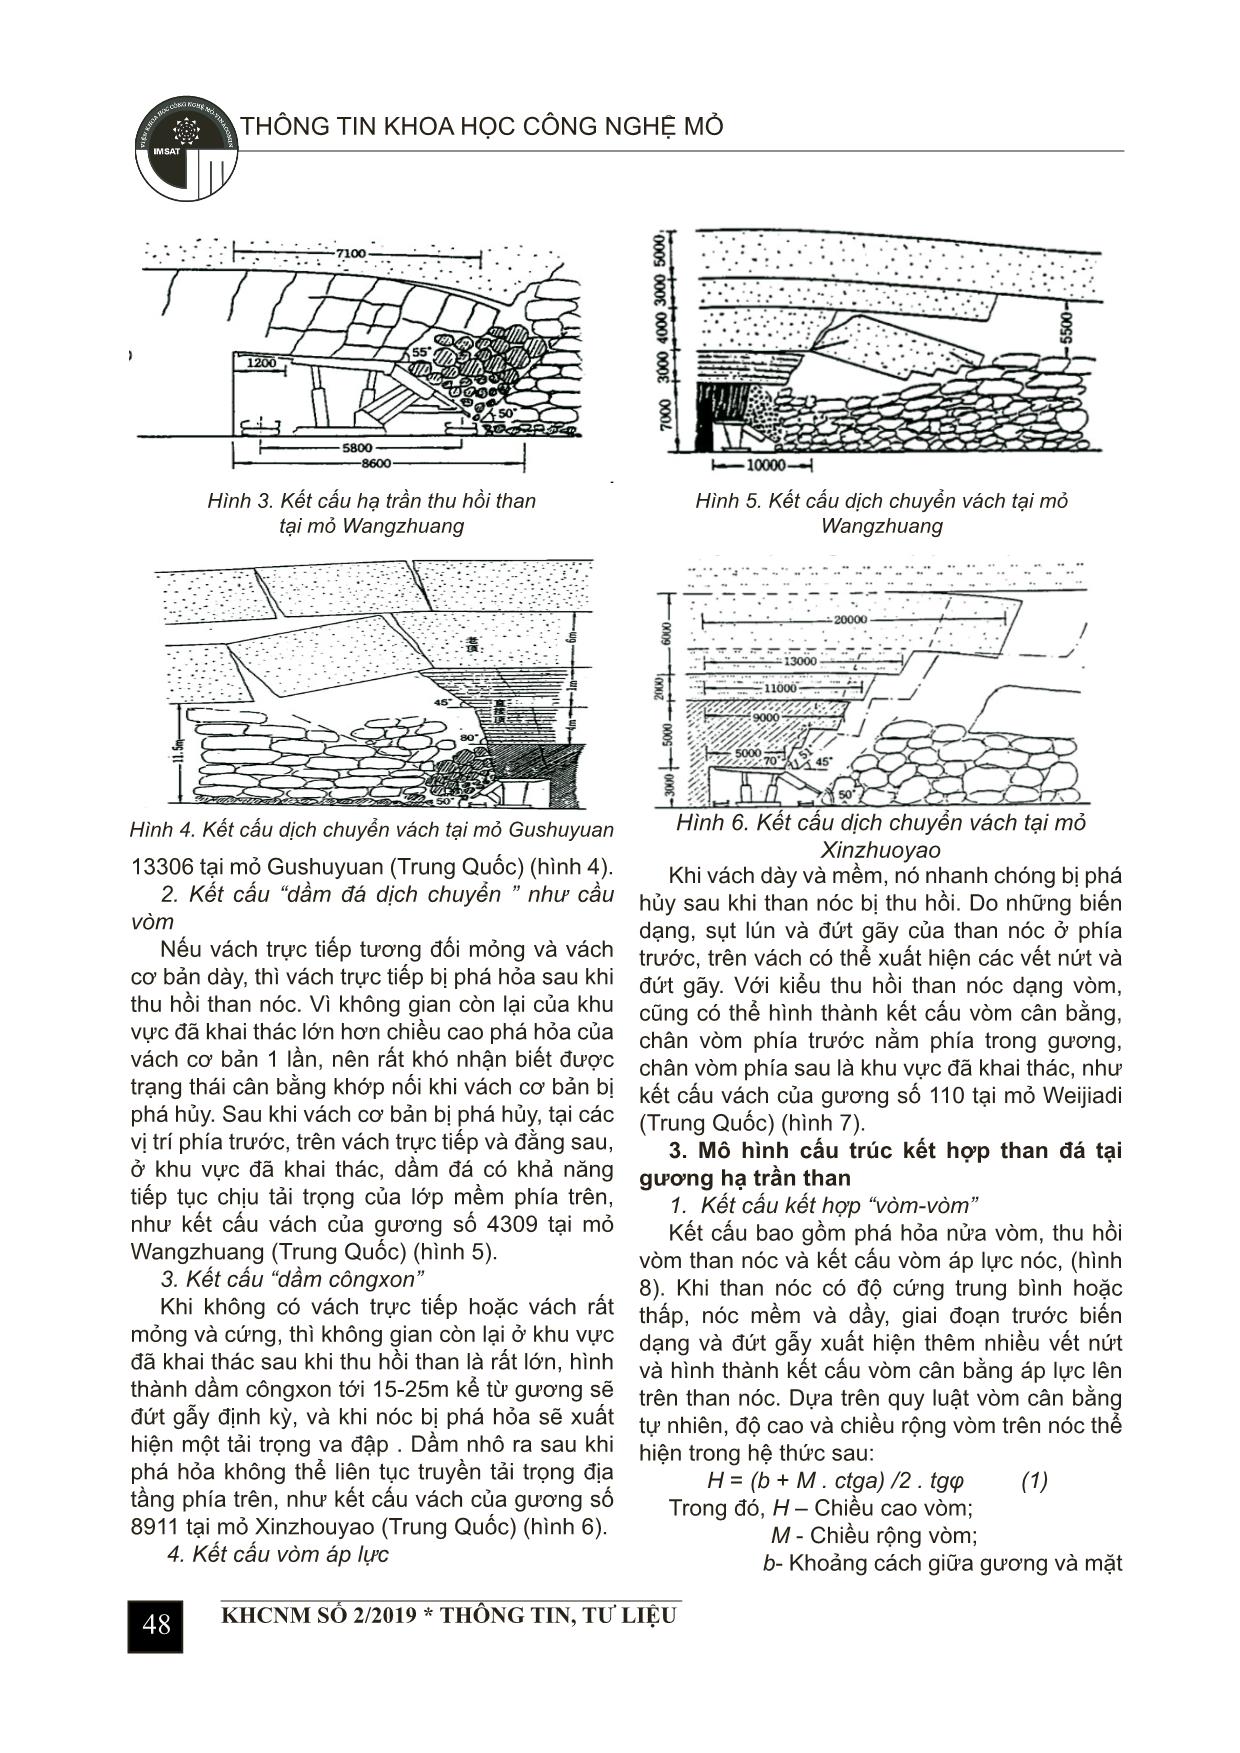 Nghiên cứu quy luật dịch chuyển than - đá và biện pháp kiểm soát gương hạ trần than nóc trang 2